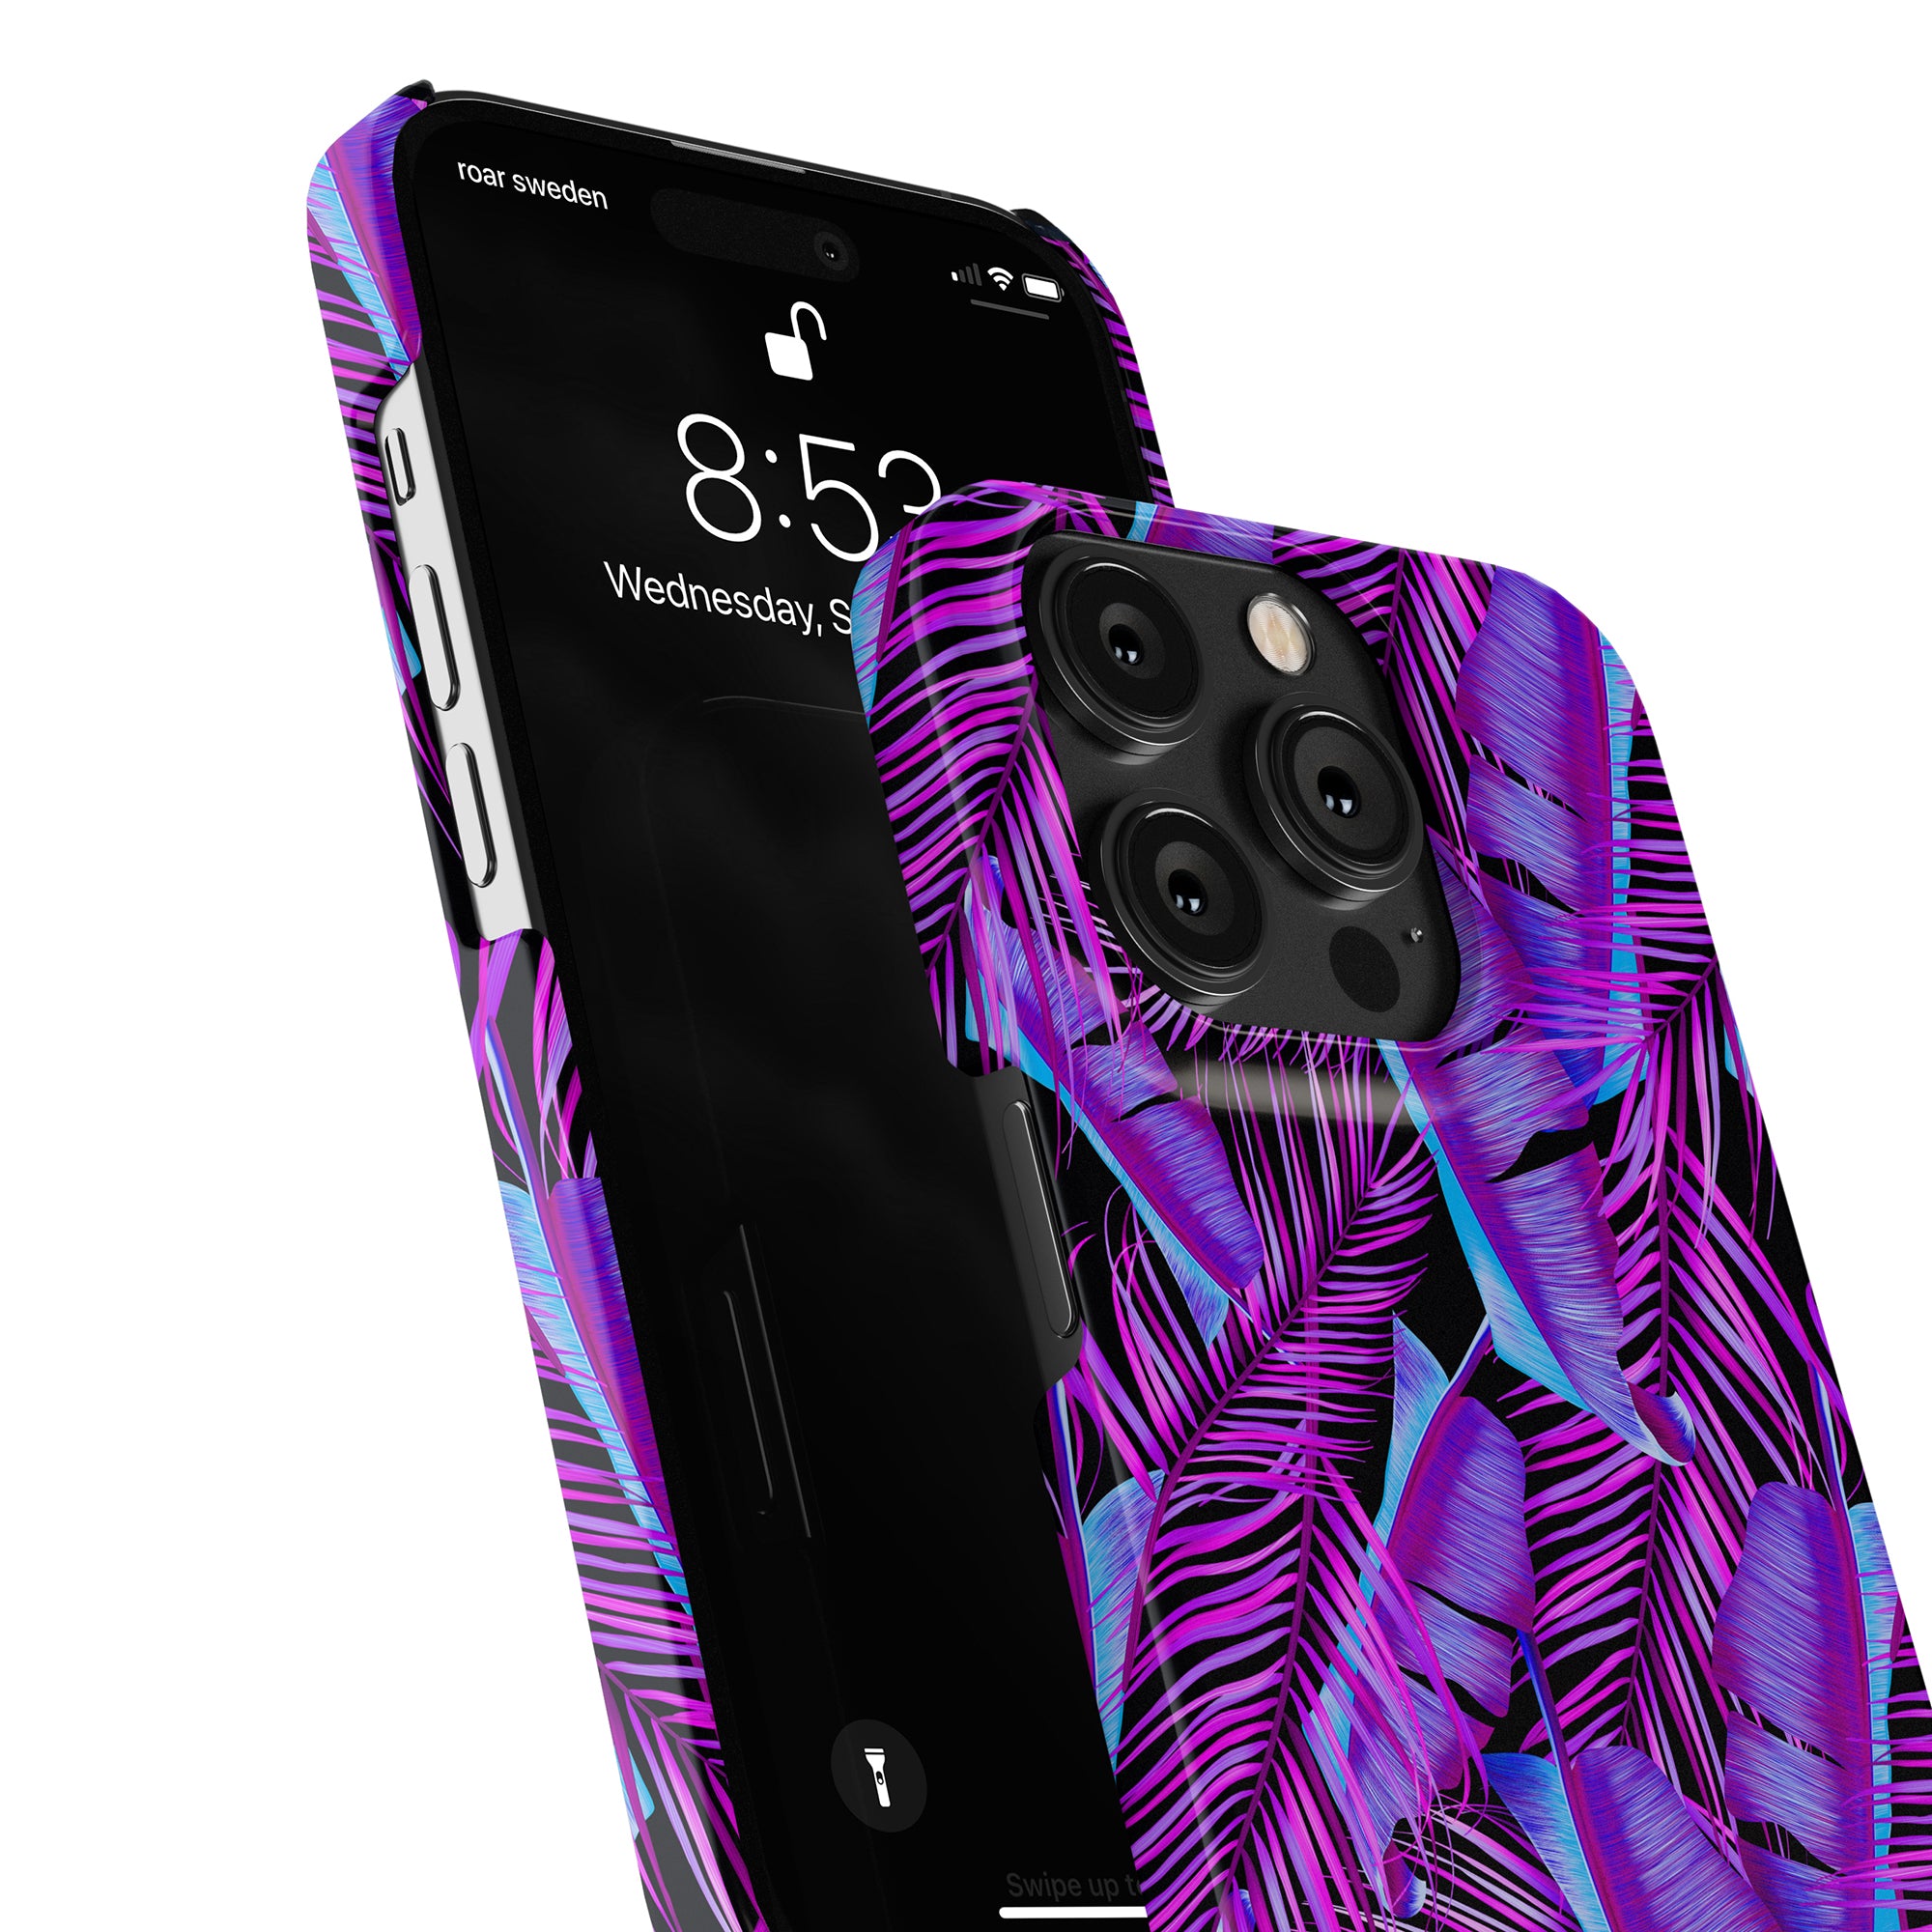 En fräsch och livlig känsla till din smartphone med vårt mobilskal Tropical Vibes - Smal case! Detta mobilskal i lila och blått palmbladsmön.